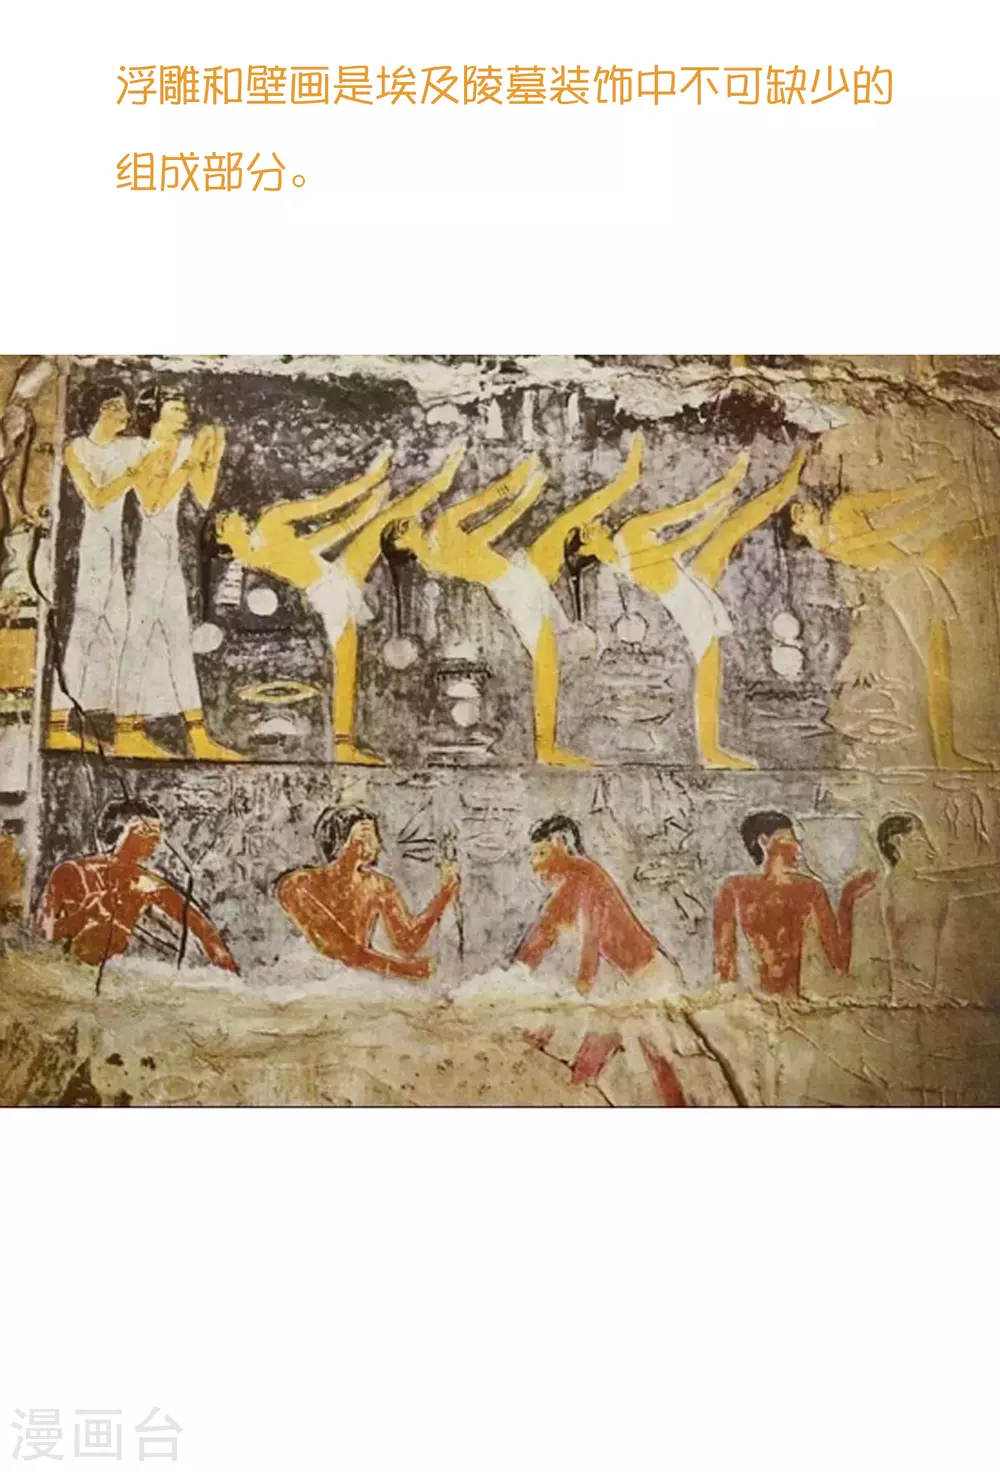 王的第一宠后 - 王的茶话会38 古埃及的壁画文化 - 1